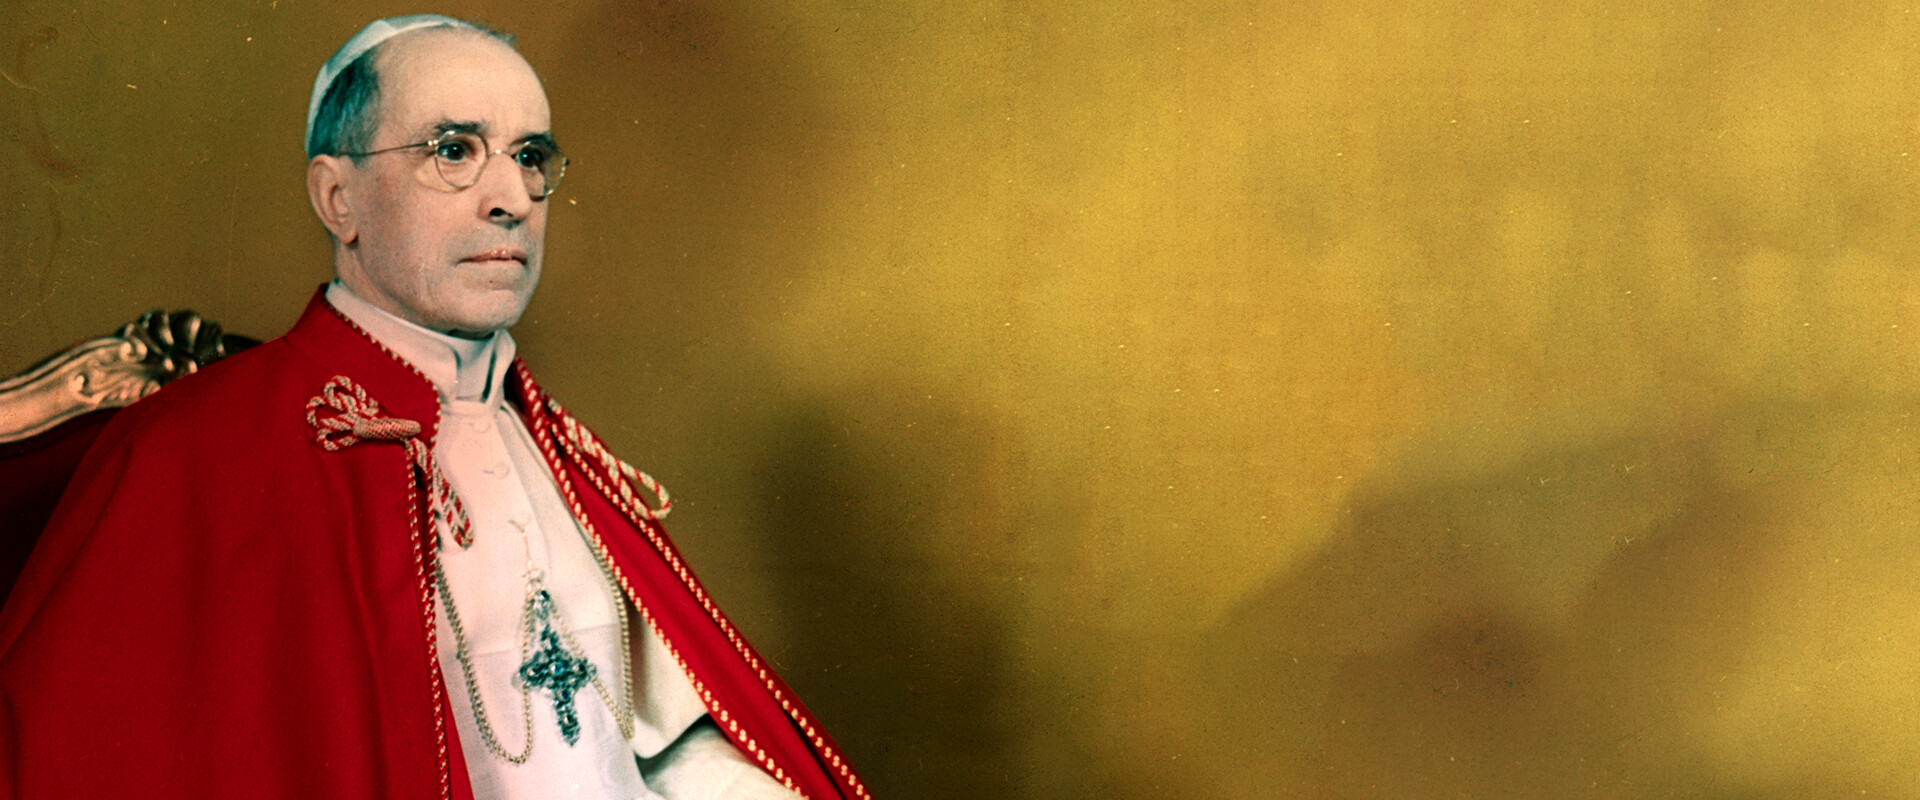 האפיפיור פיוס ה-12 (צילום: getty images)